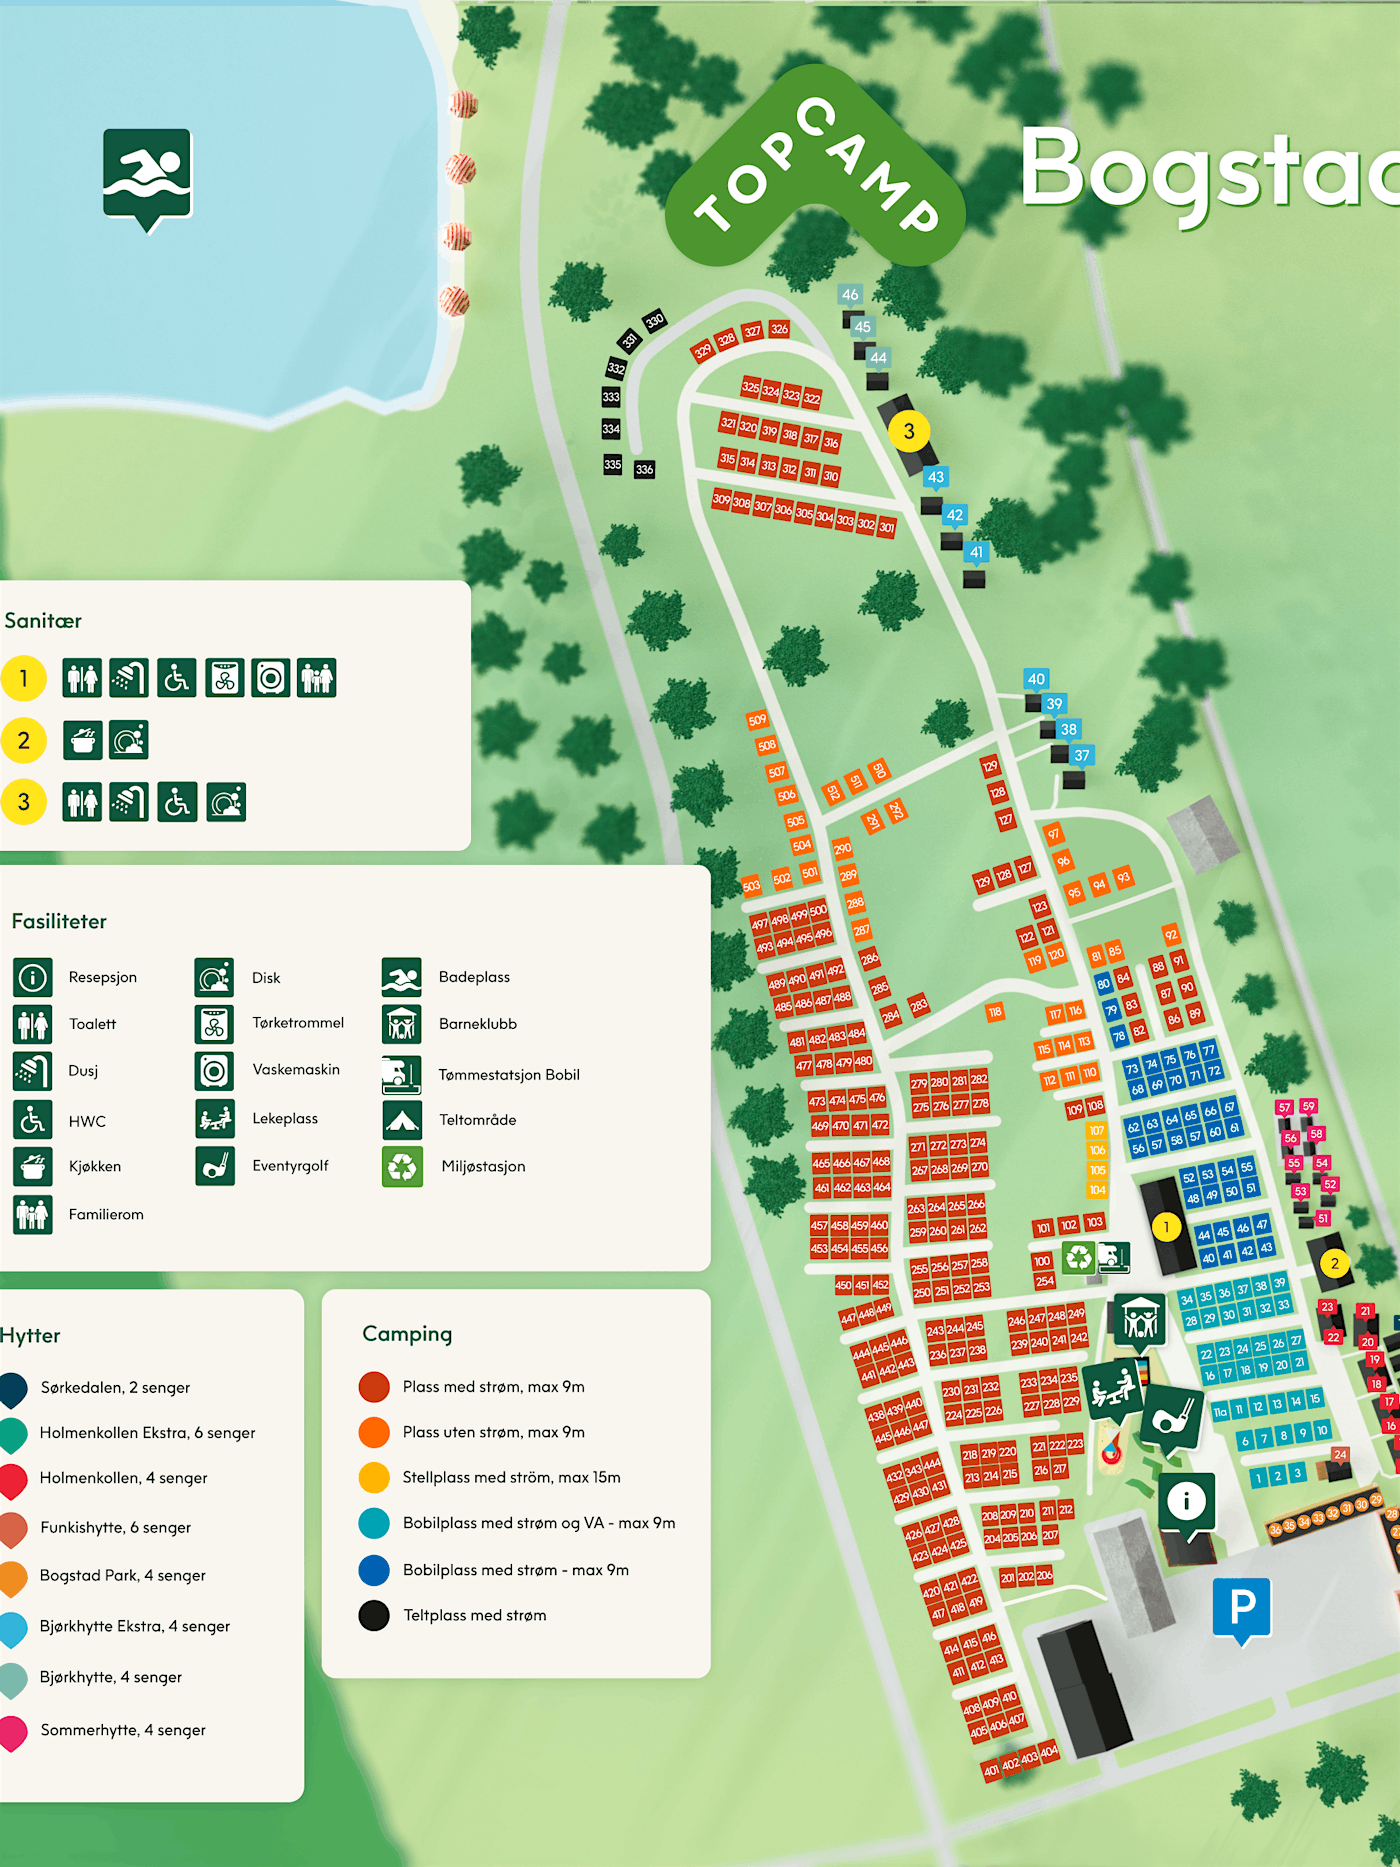 Illustrationskarte des Gebiets mit Ortsnummern und Gebäuden.